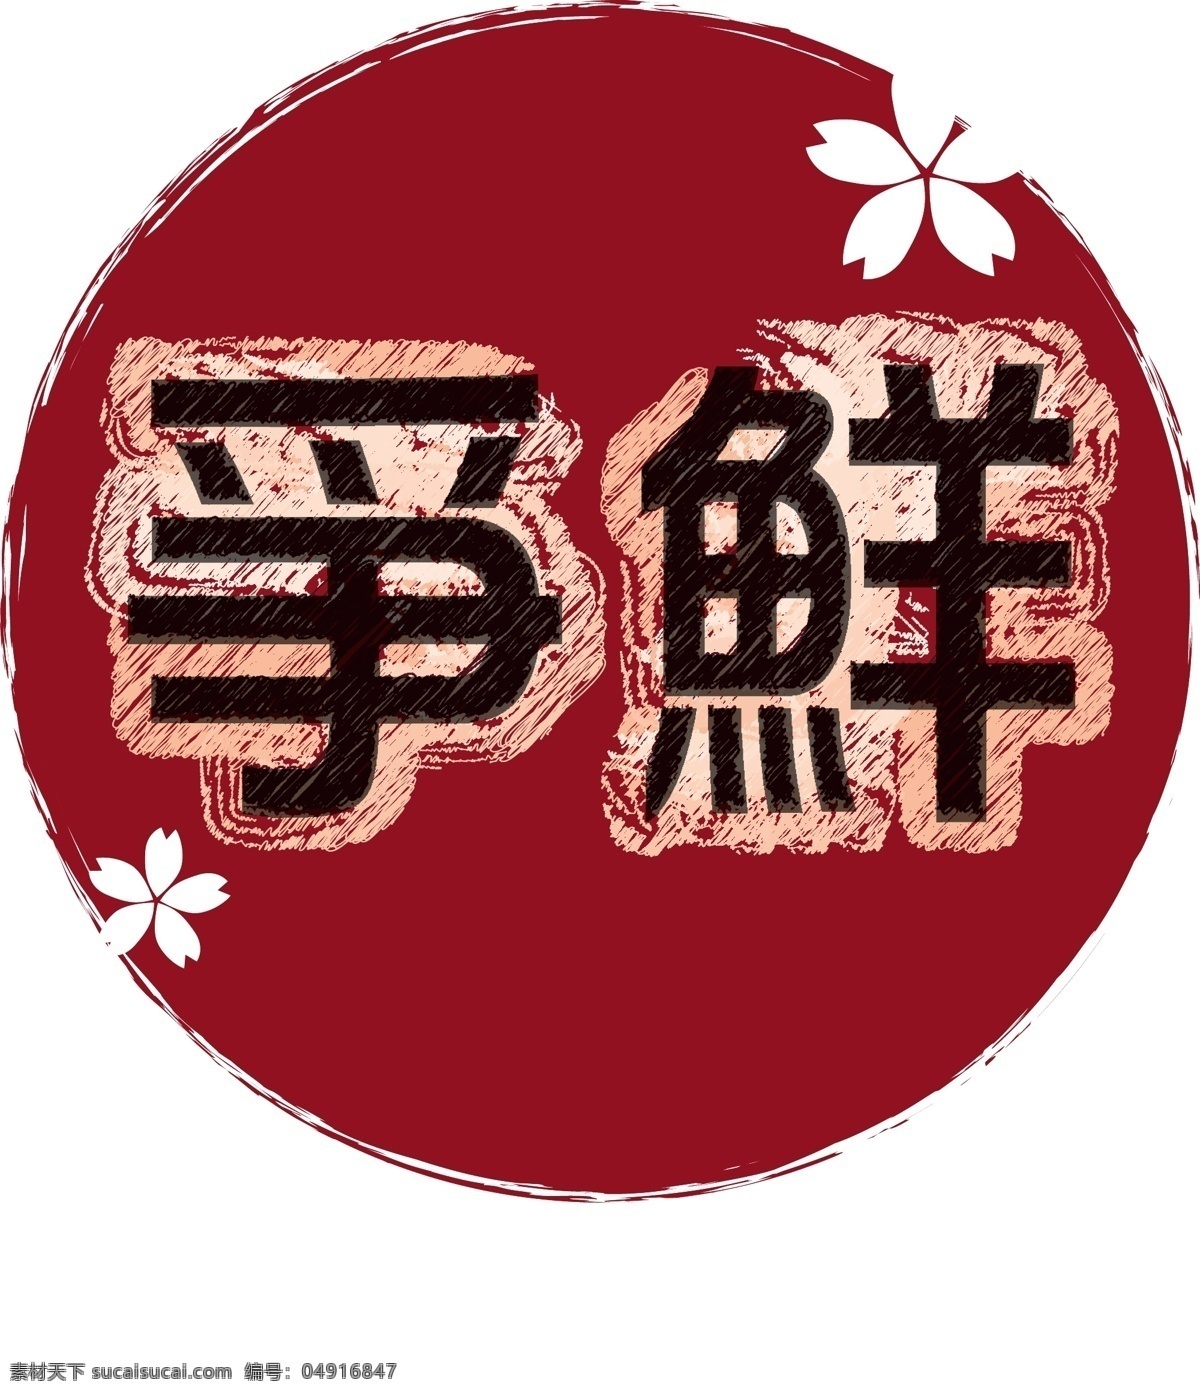 日式 logo 設 計 稿 下 載 日本 櫻花 太陽 手繪 企業文化 淘宝素材 其他淘宝素材